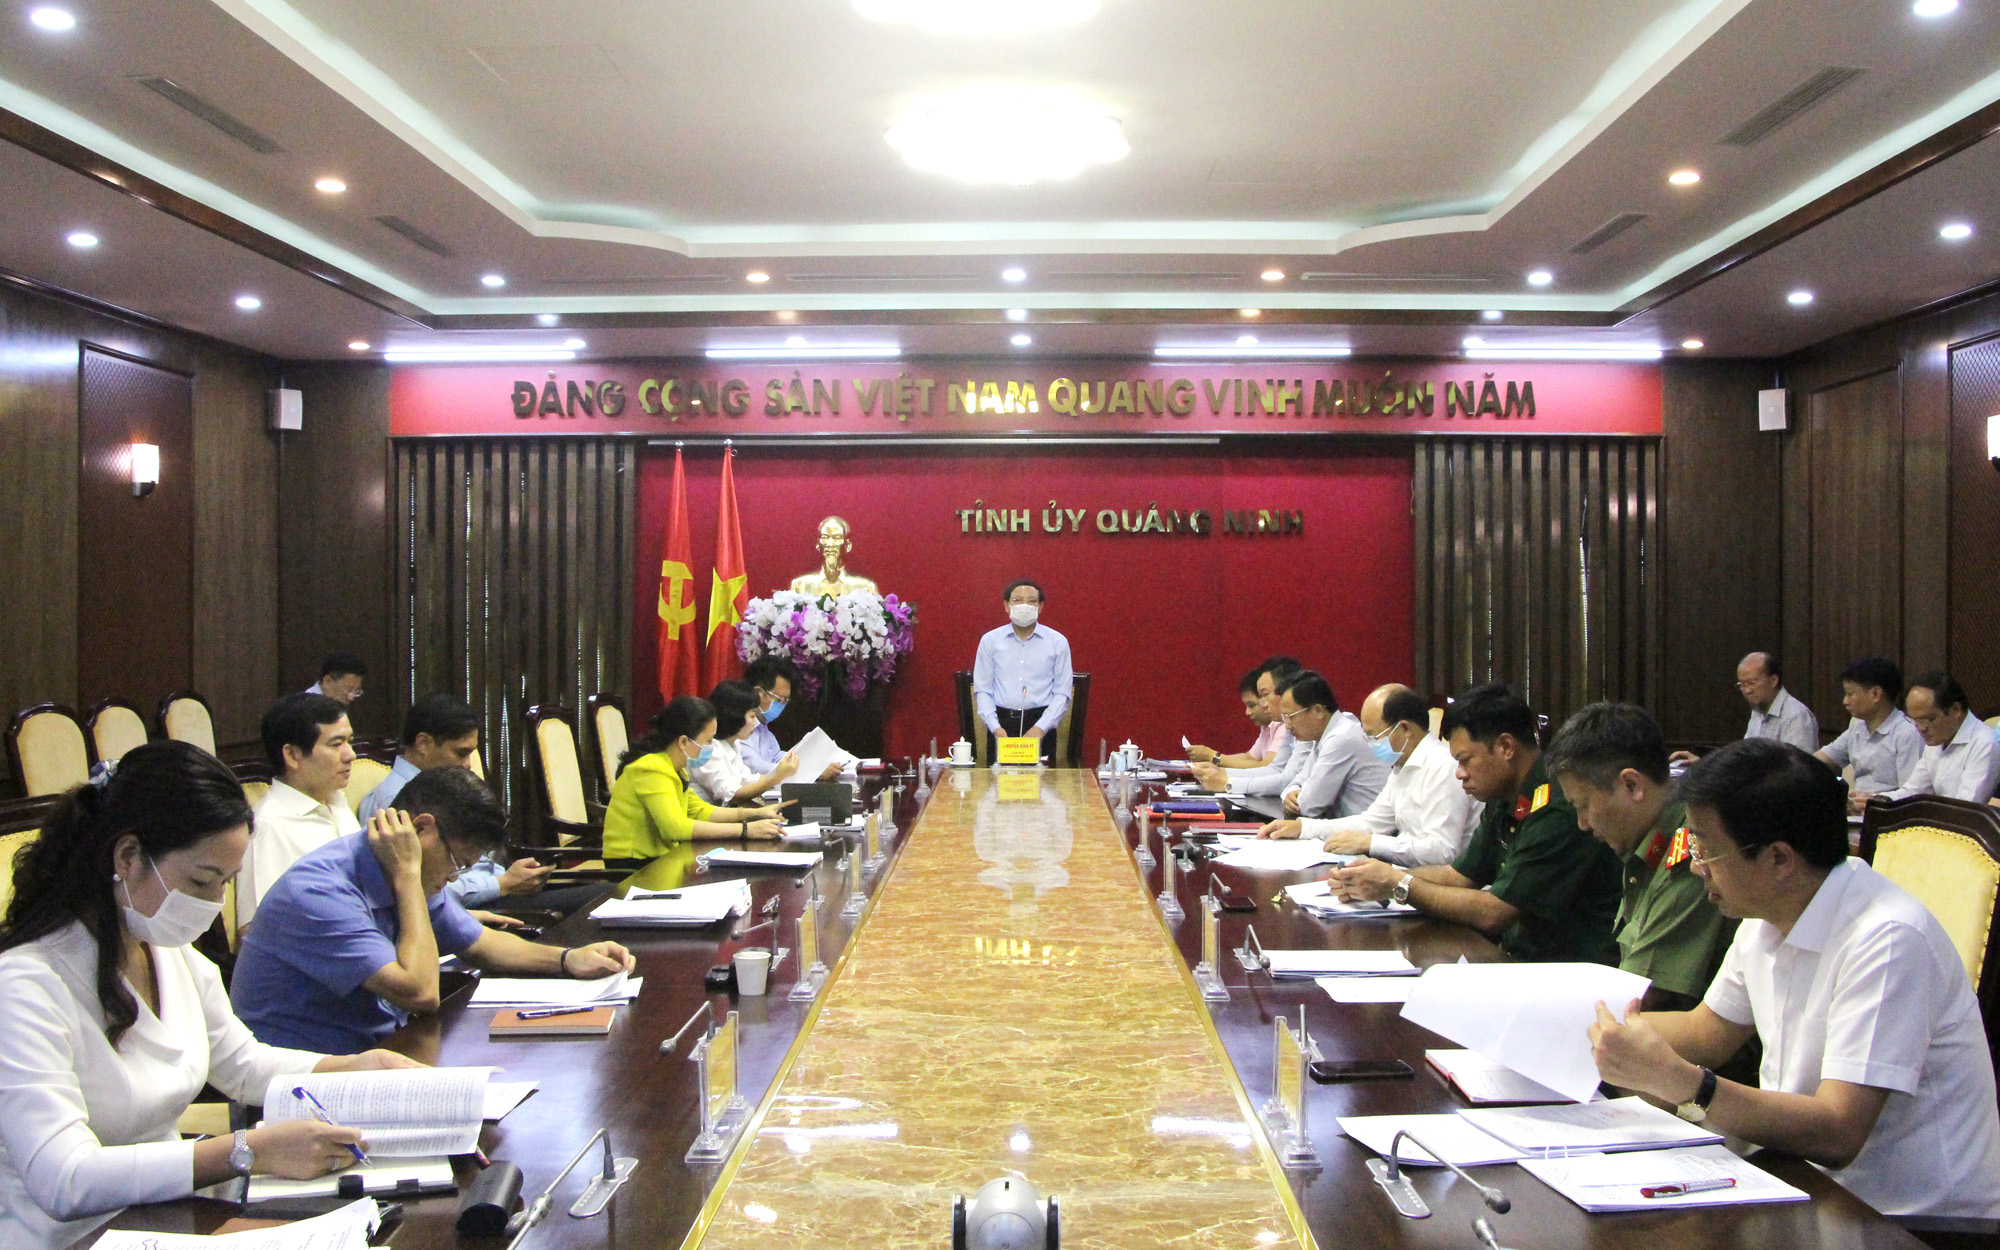 Đồng chí Nguyễn Xuân Ký, Bí thư Tỉnh ủy, Chủ tịch HĐND tỉnh, kết luận hội nghị.